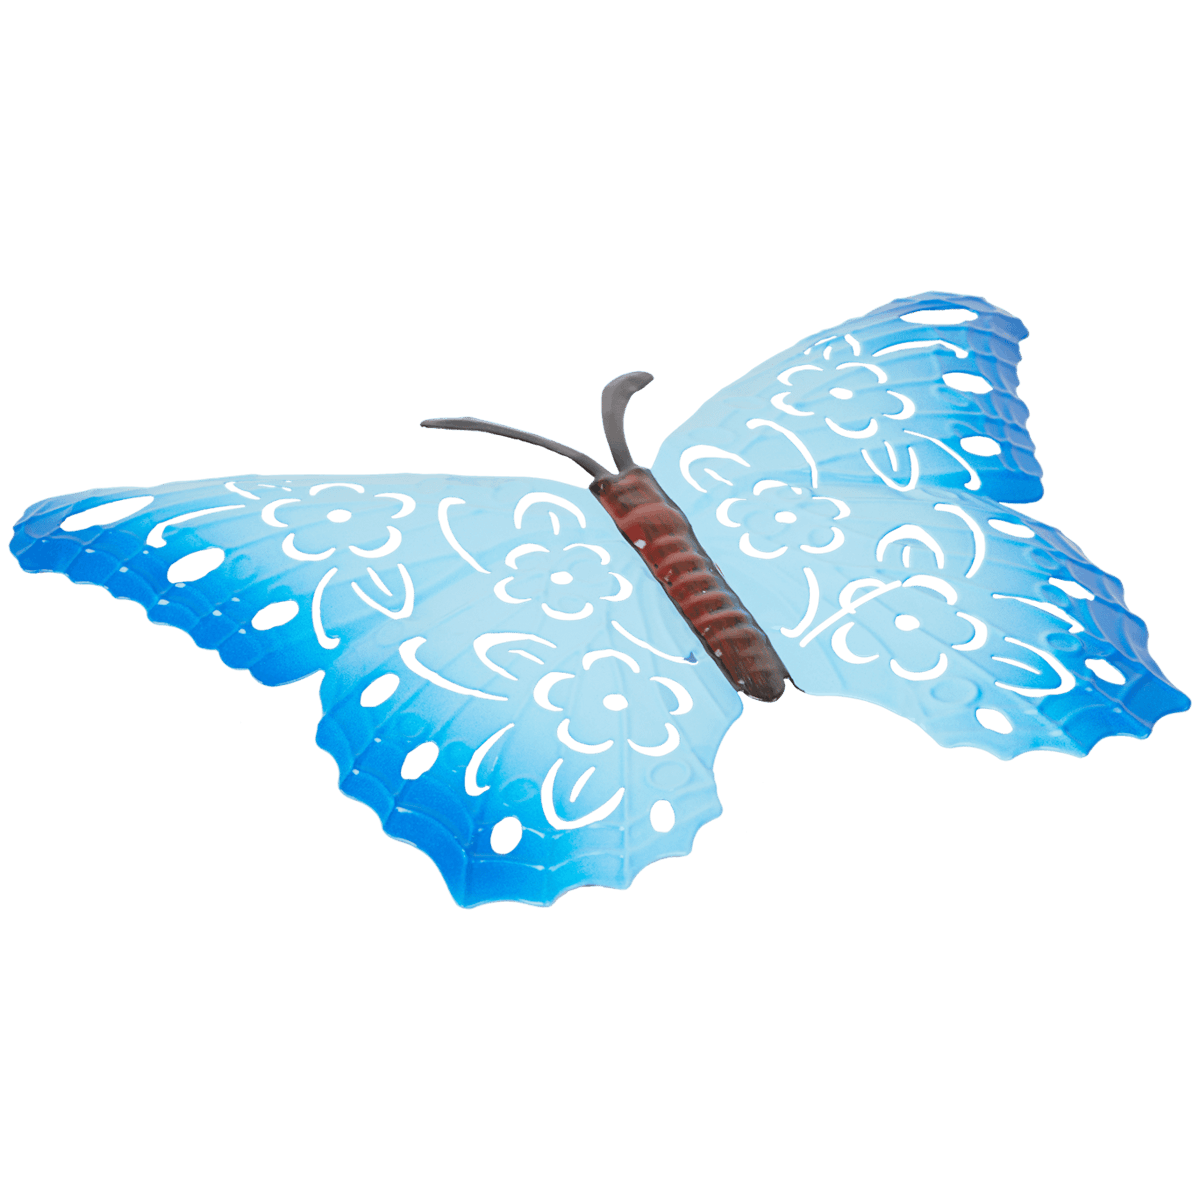 Dekoracyjny motyl